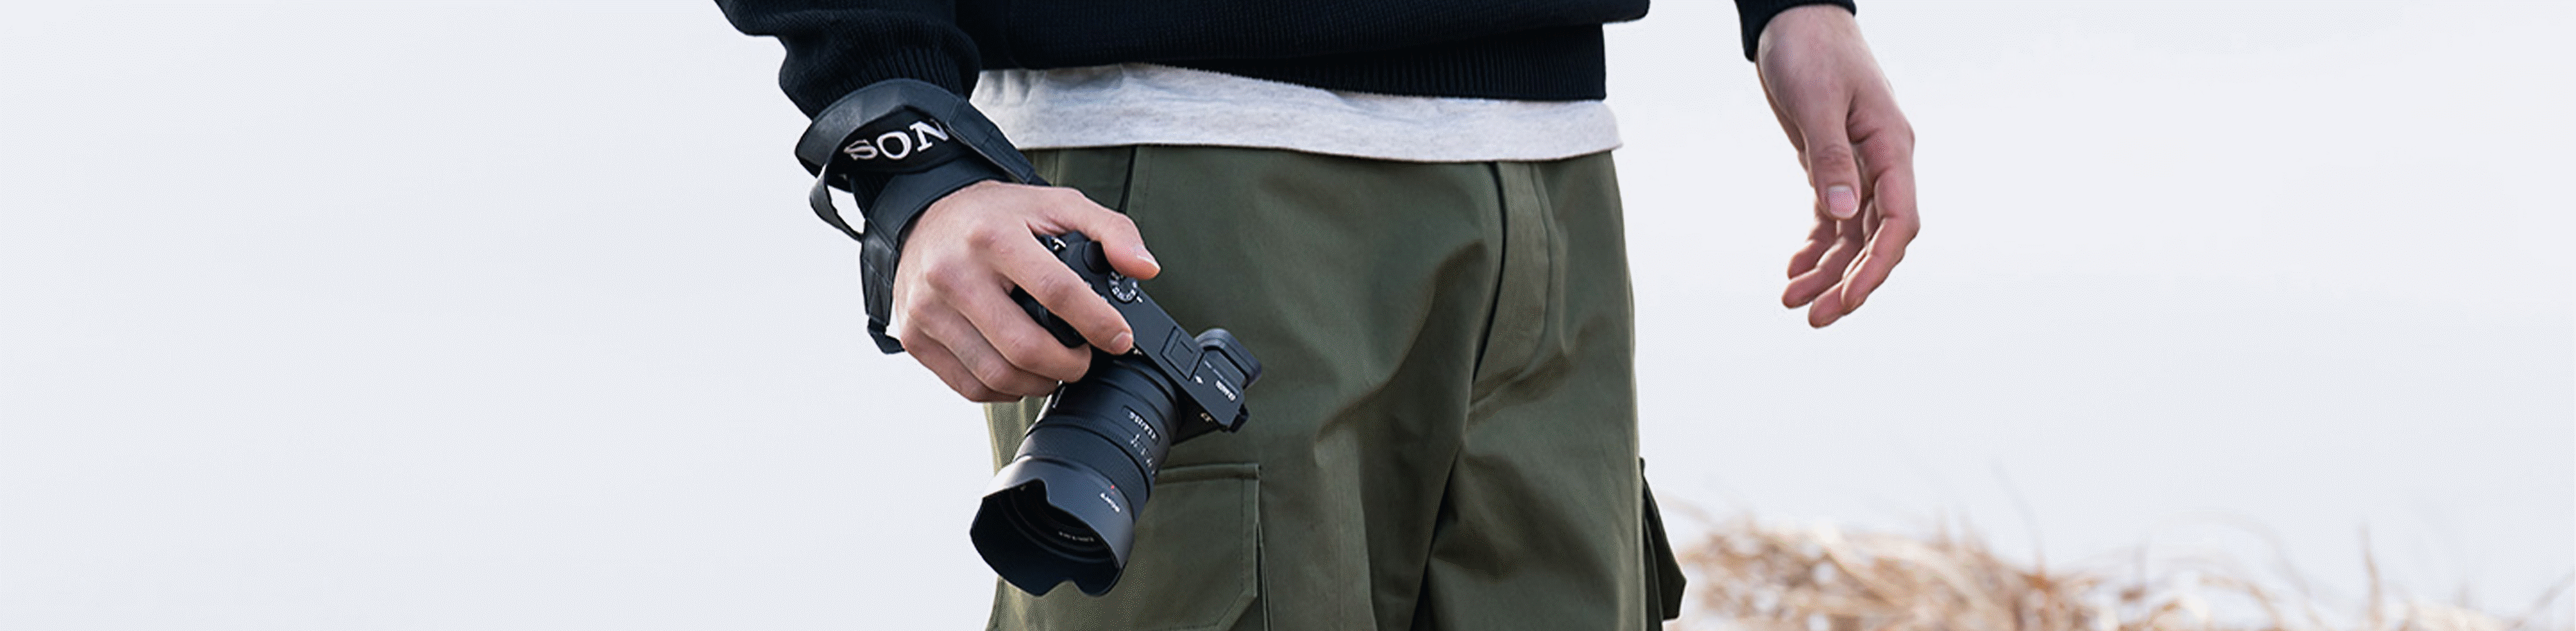 Imagen de un hombre portando una cámara en la mano